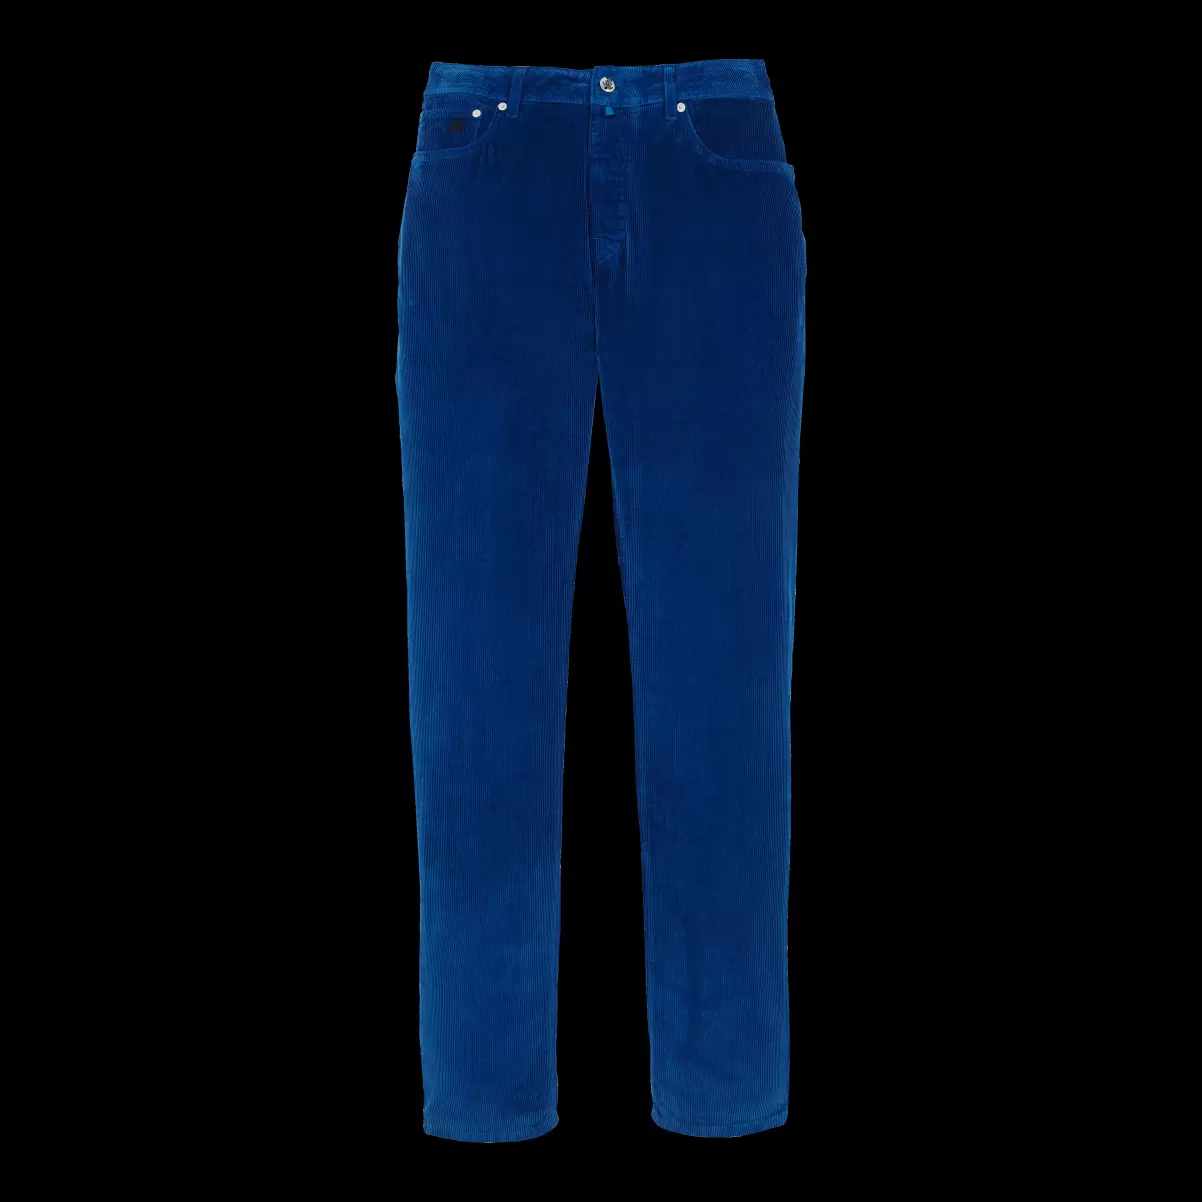 Hombre Pantalones De Pana De 1500 Líneas Con Cinco Bolsillos Para Hombre Pantalones Vilebrequin Batik Azul / Azul Precio De Promoción - 3